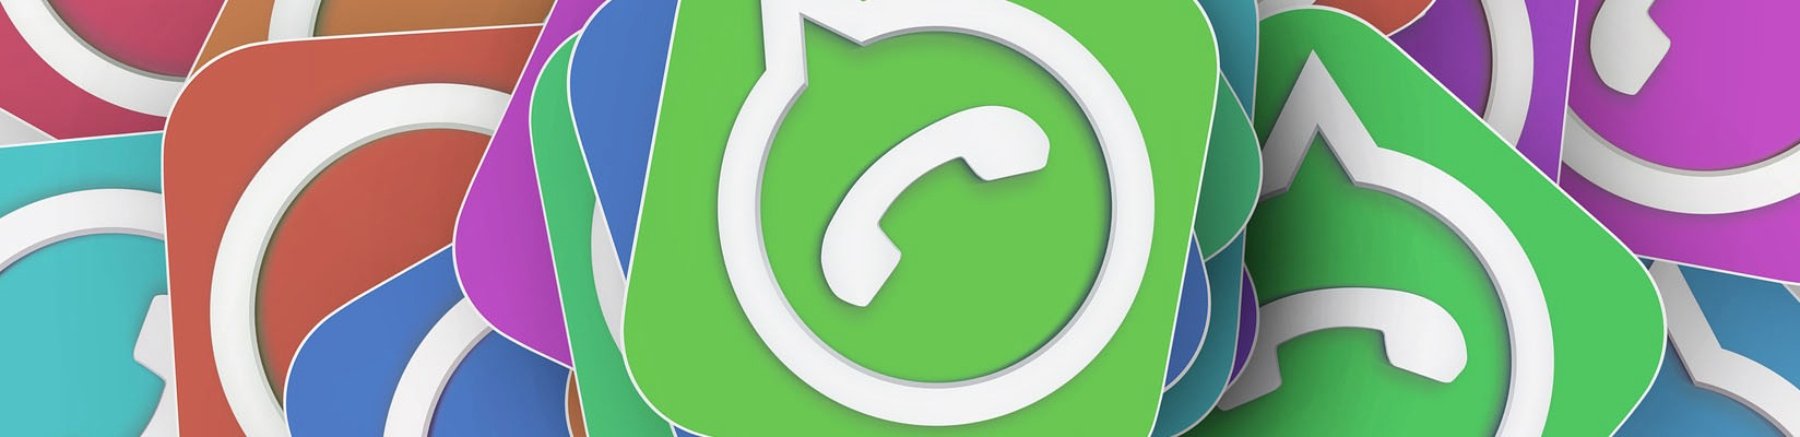 WhatsApp: boom di utenti nel 2017